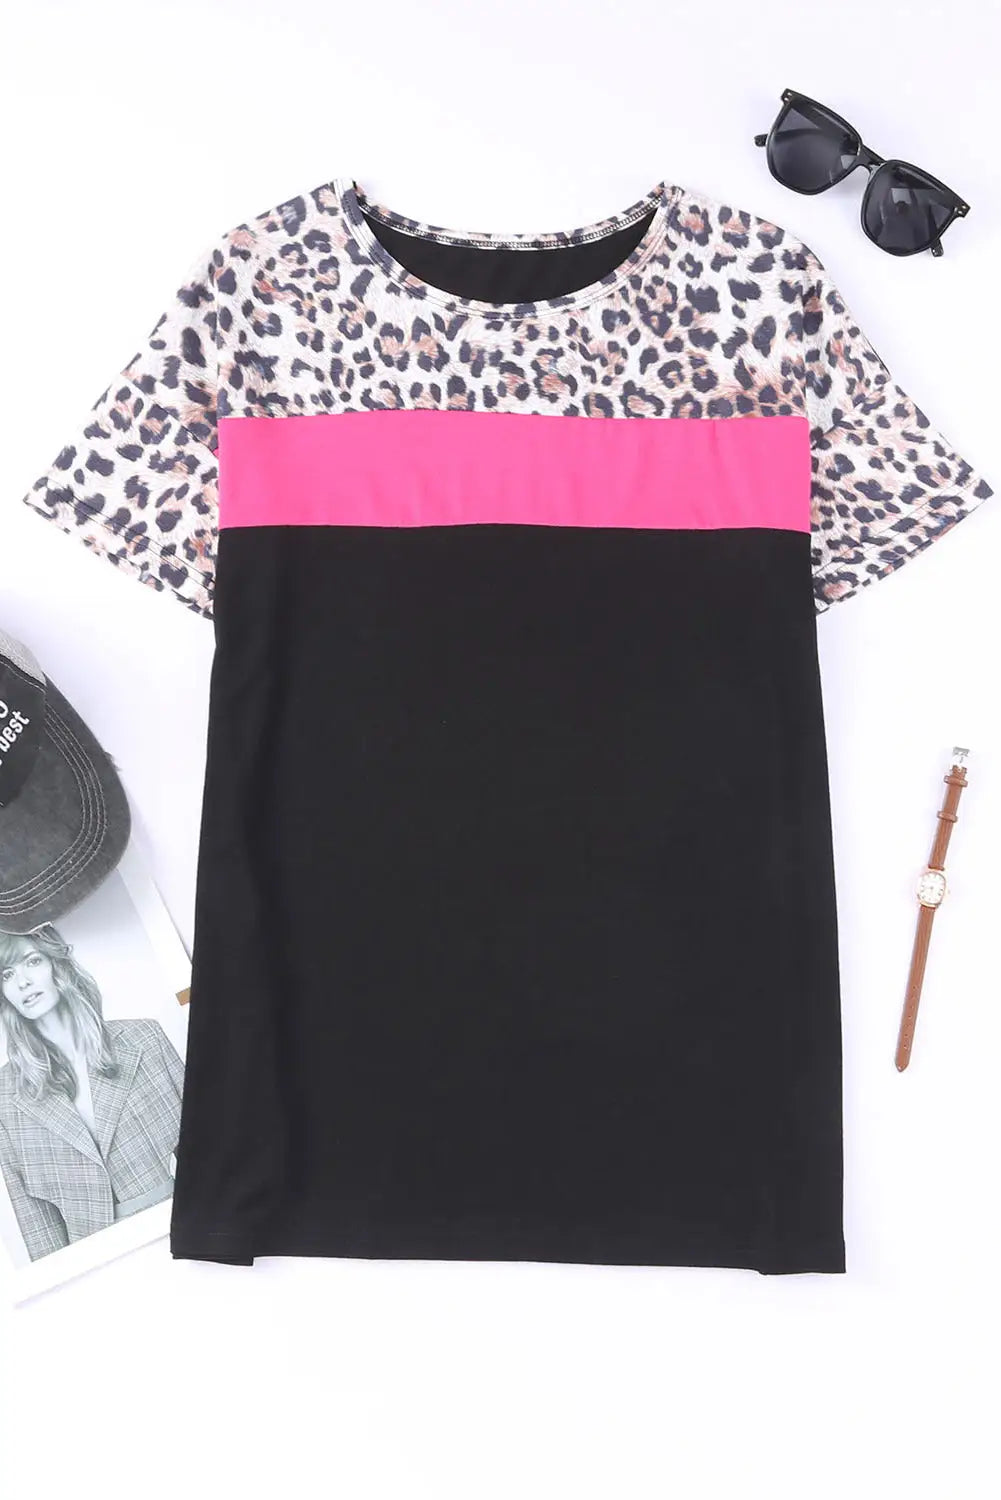 Black leopard colorblock splicing t-shirt - tops